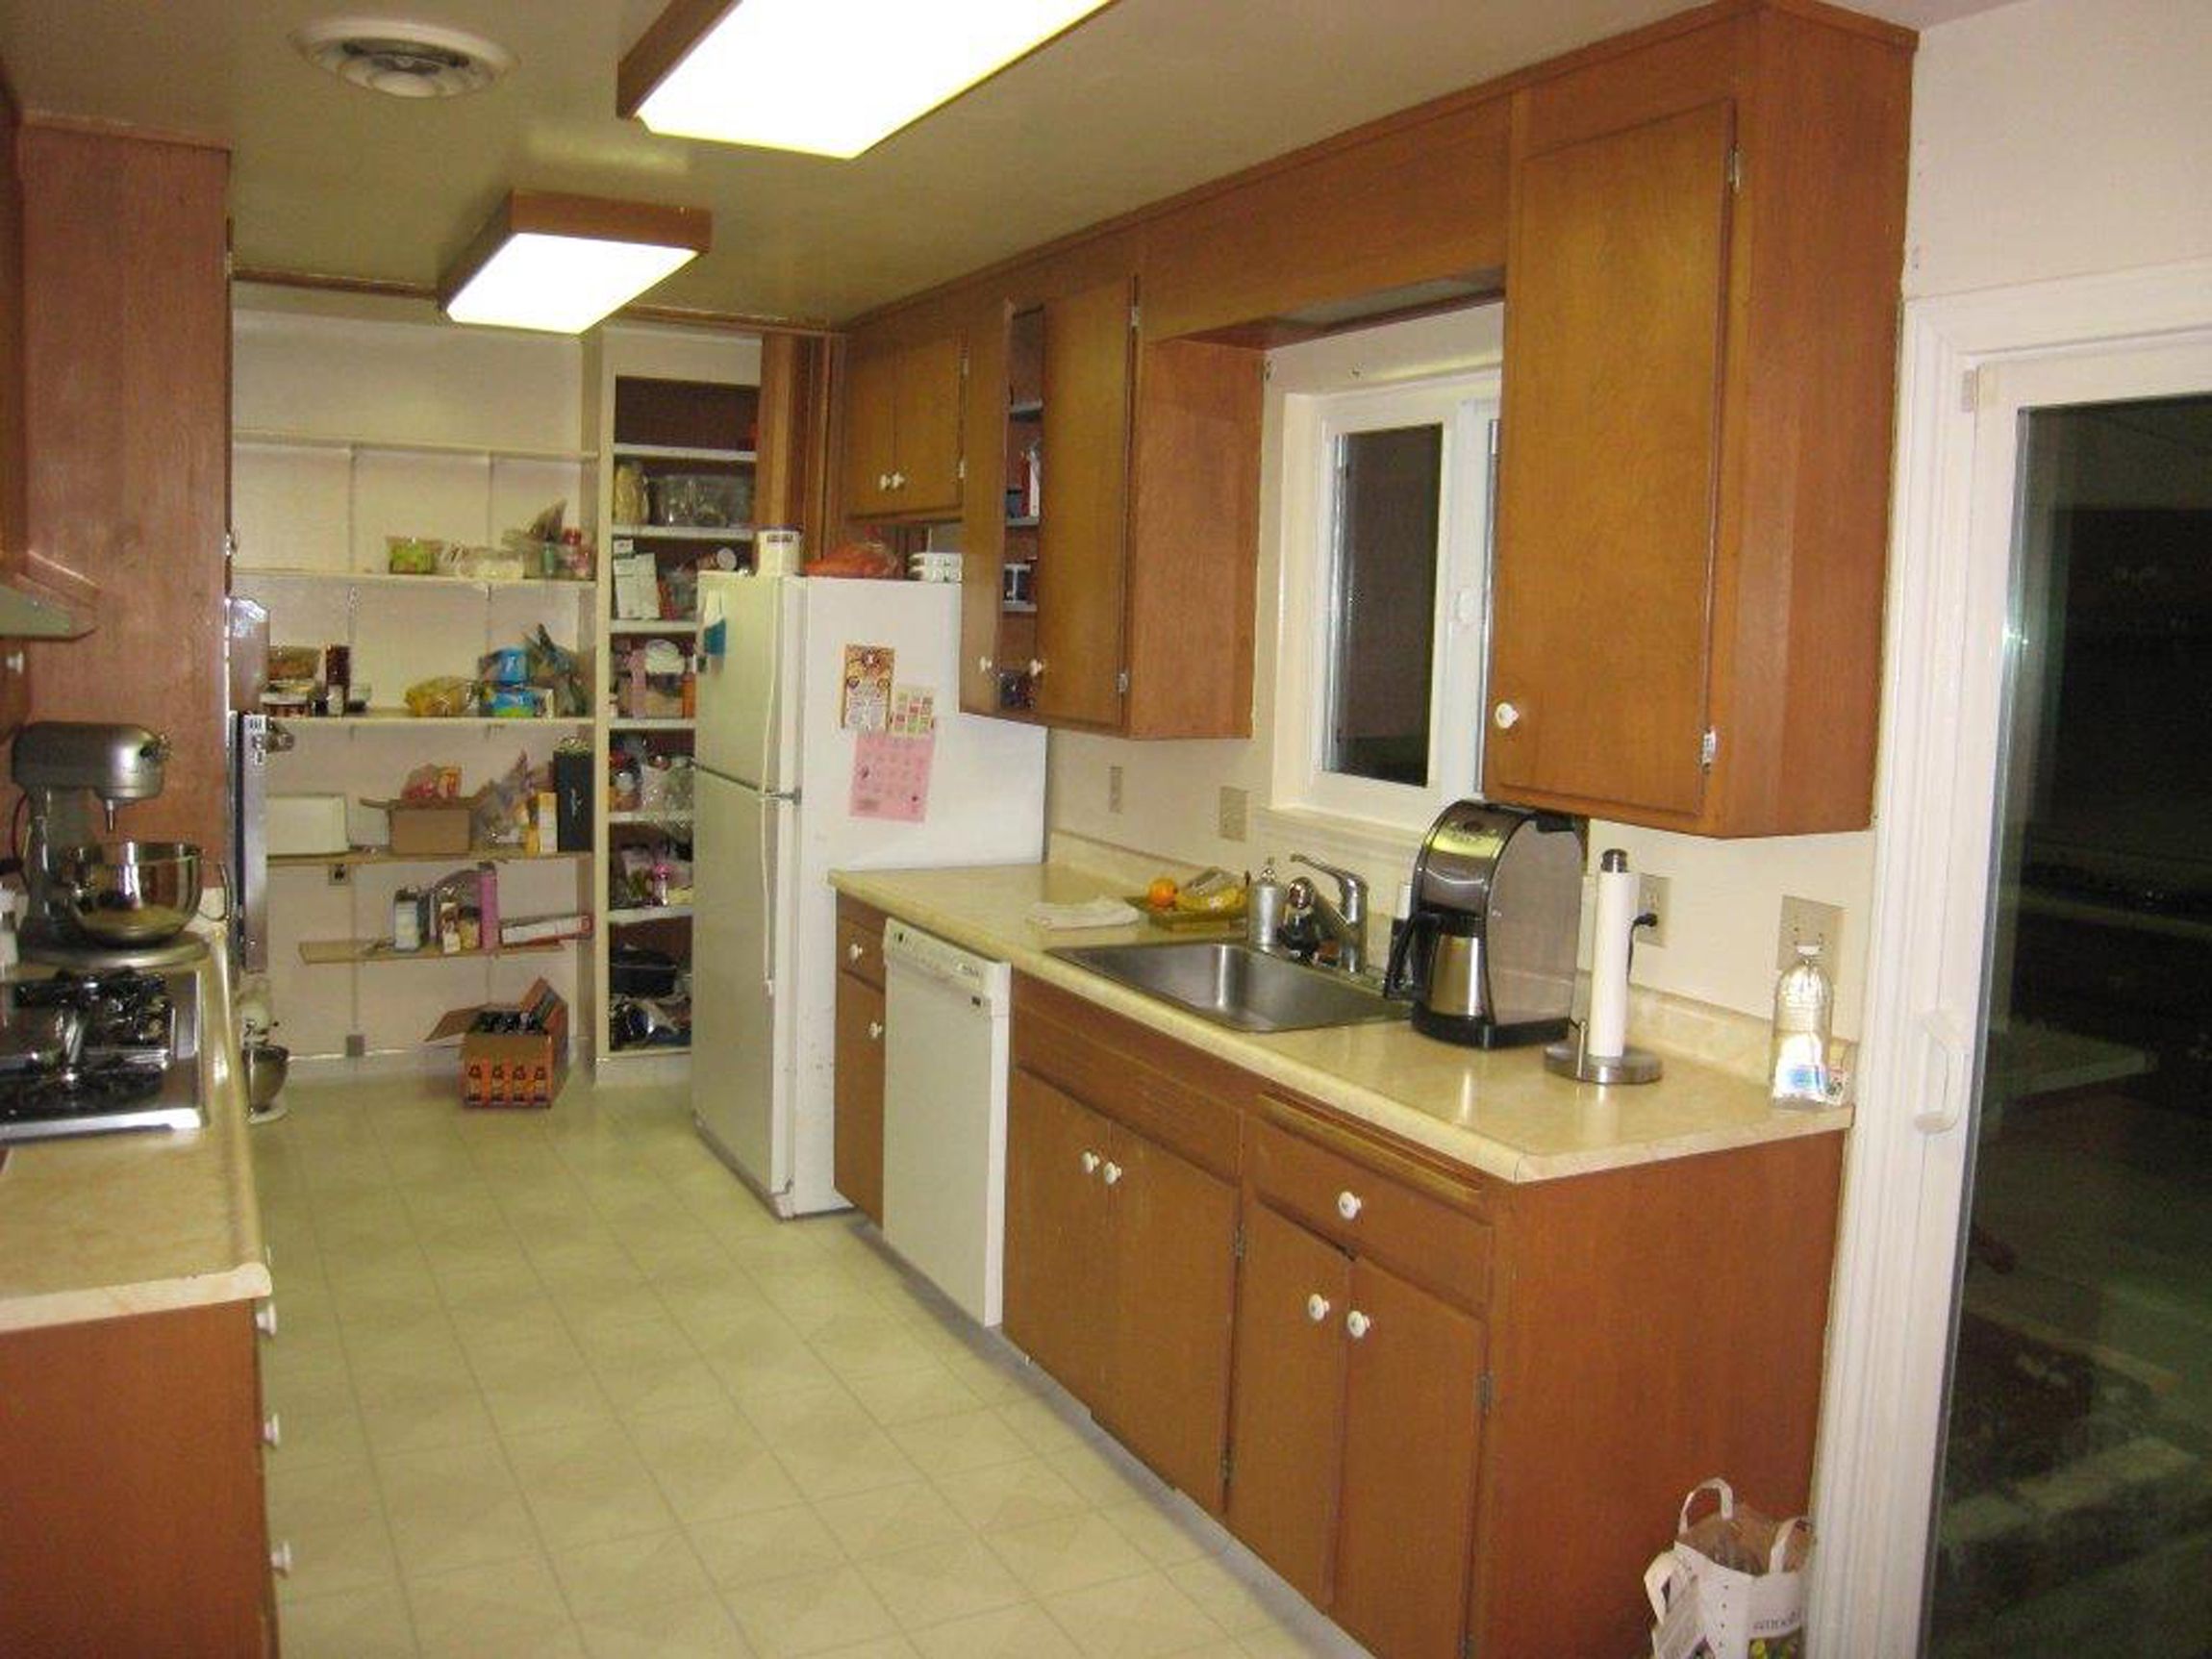 Minimalist Corridor Walnut Creek Galley Kitchen Layout Design With Organize Storage Smart Ideas For Galley Kitchen Layout Designs (View 20 of 25)